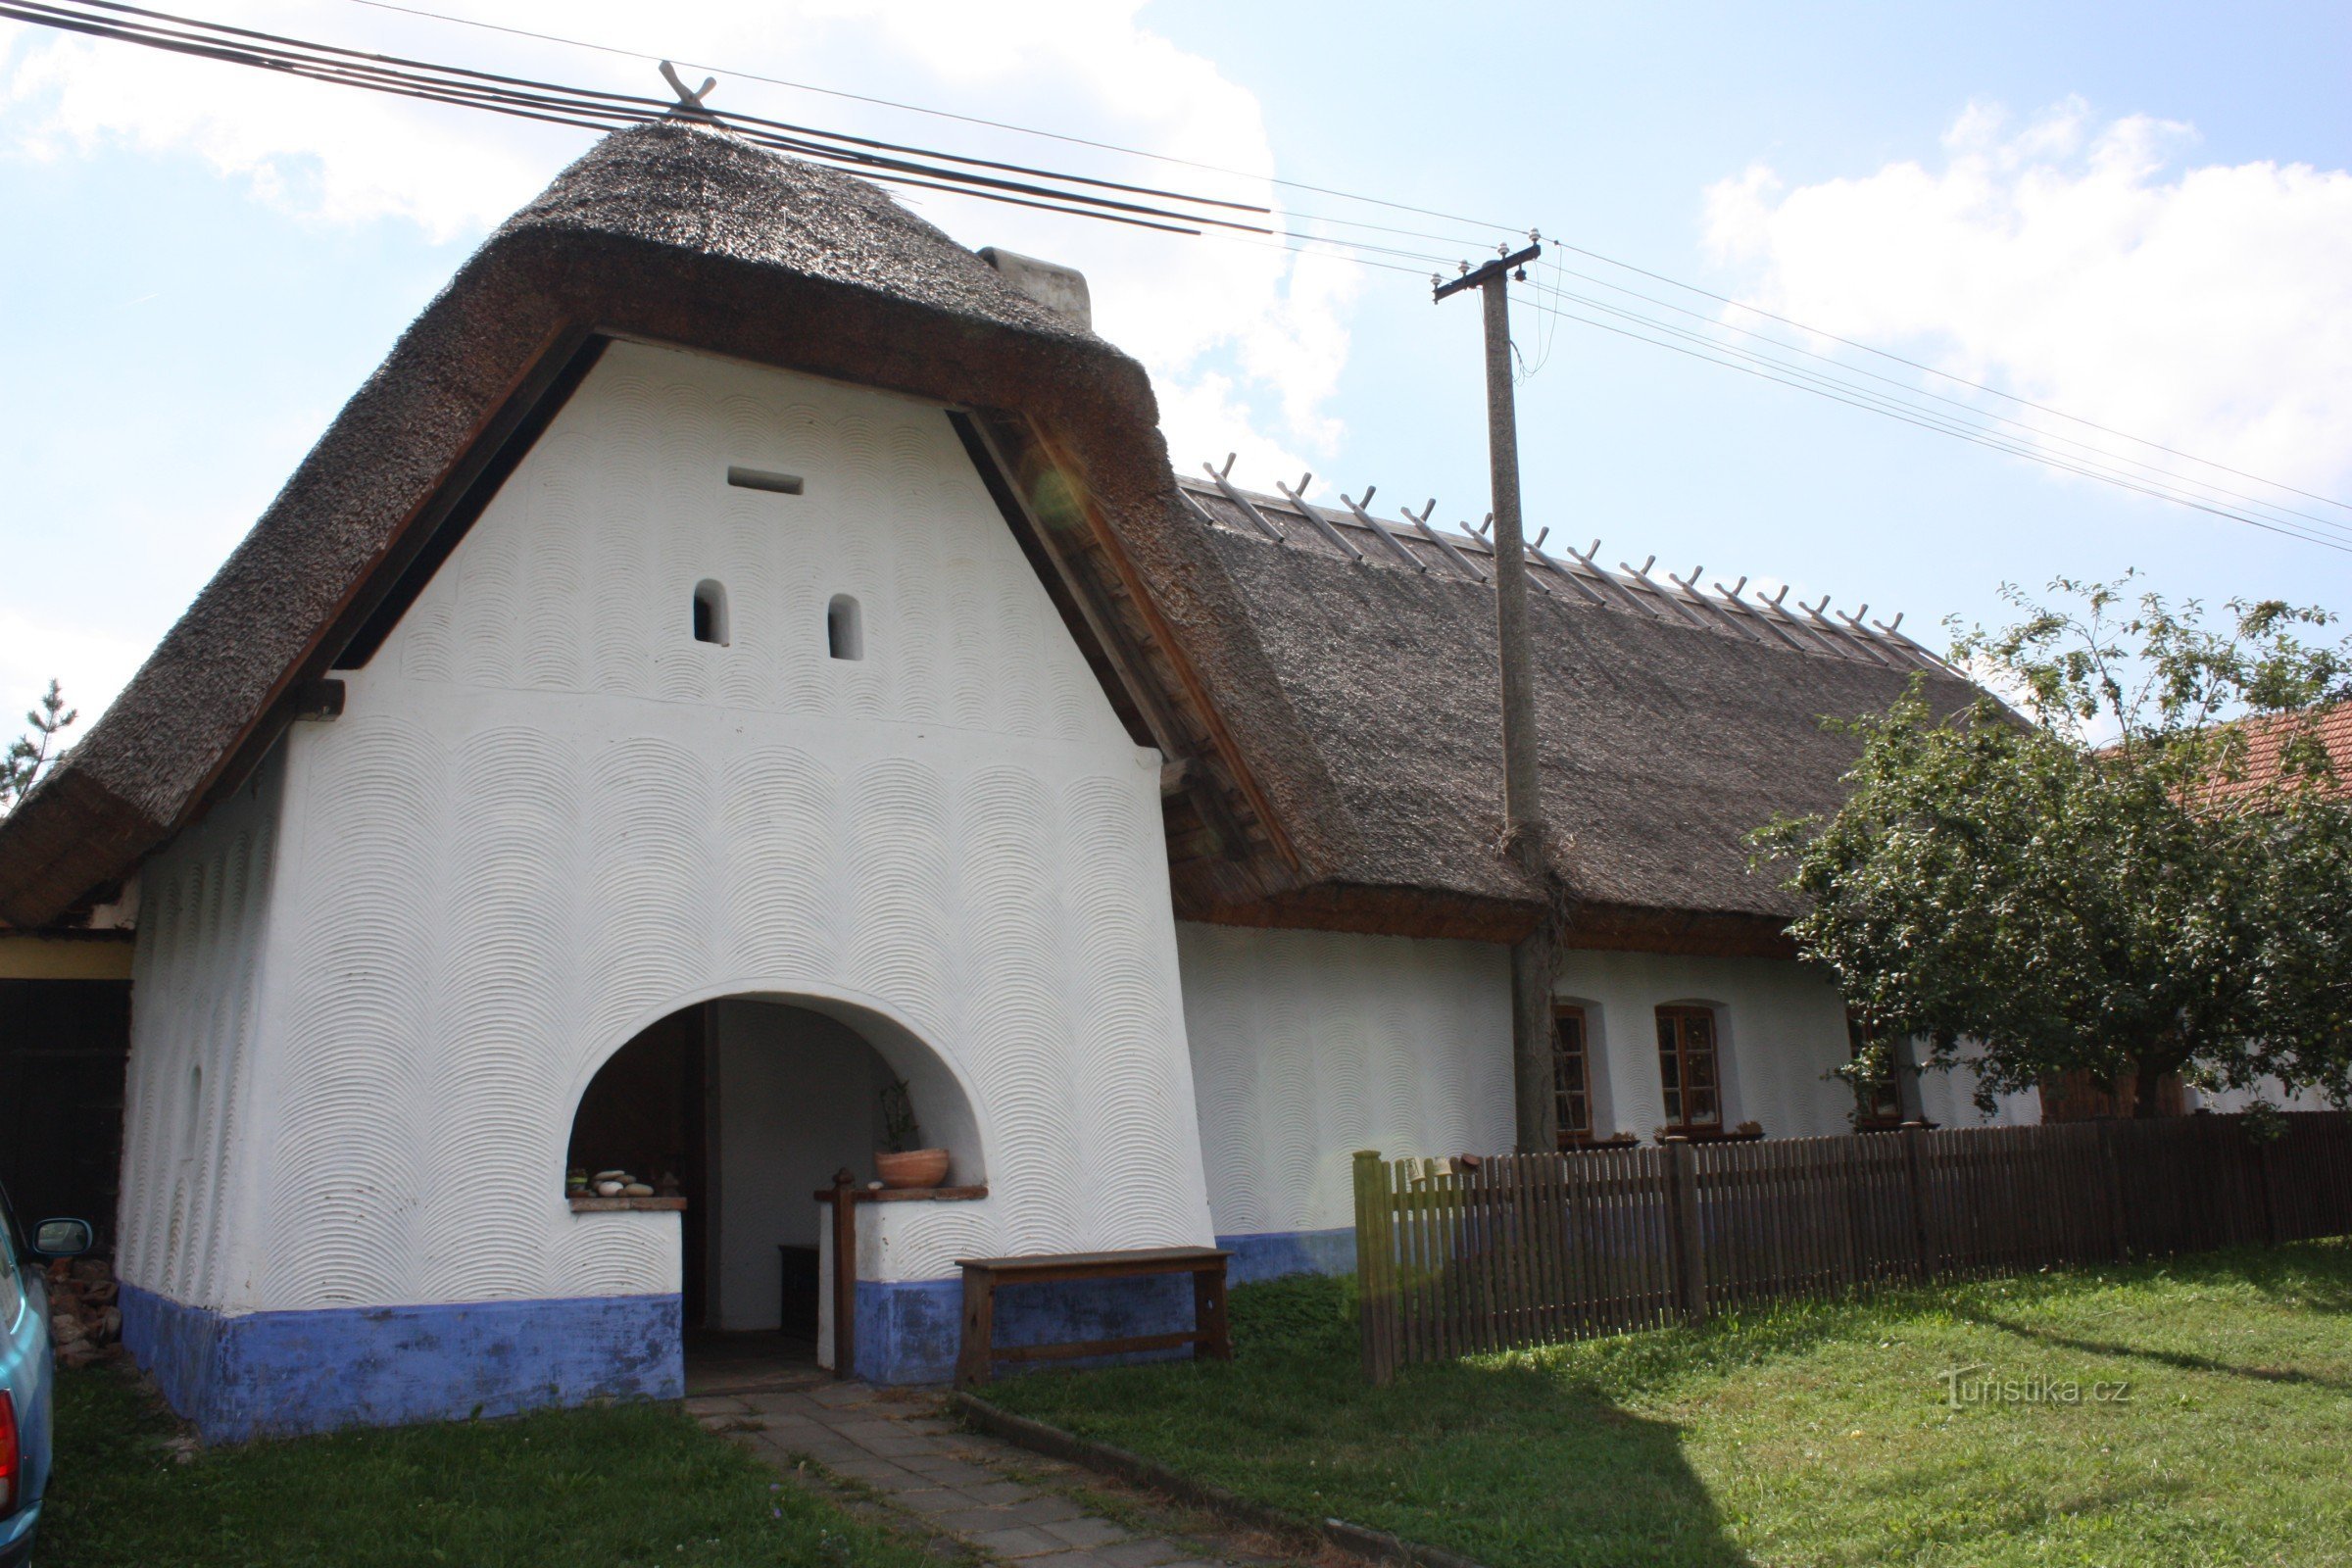 Χαλικό σπίτι Νο. 33 στο Lysovice